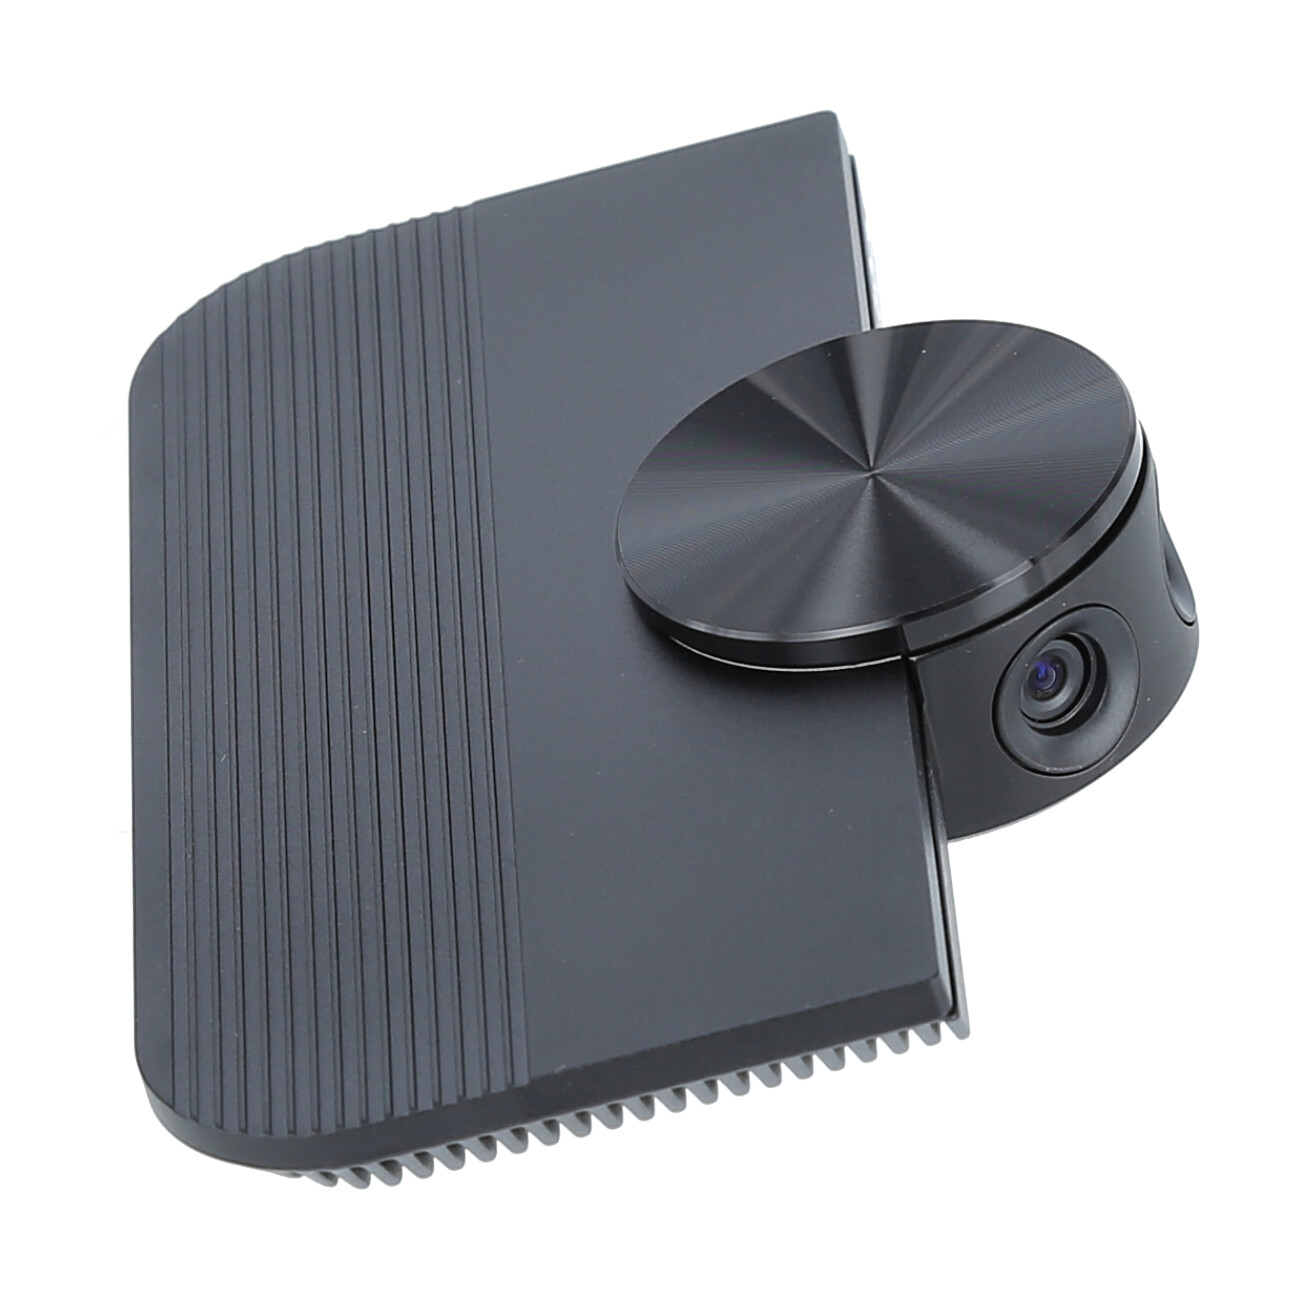 Jabra-PanaCast-Panoramik-4K-Kamera-180-FoV-USB-C-Anschluss-Microsoft-Teams-zertifiziert